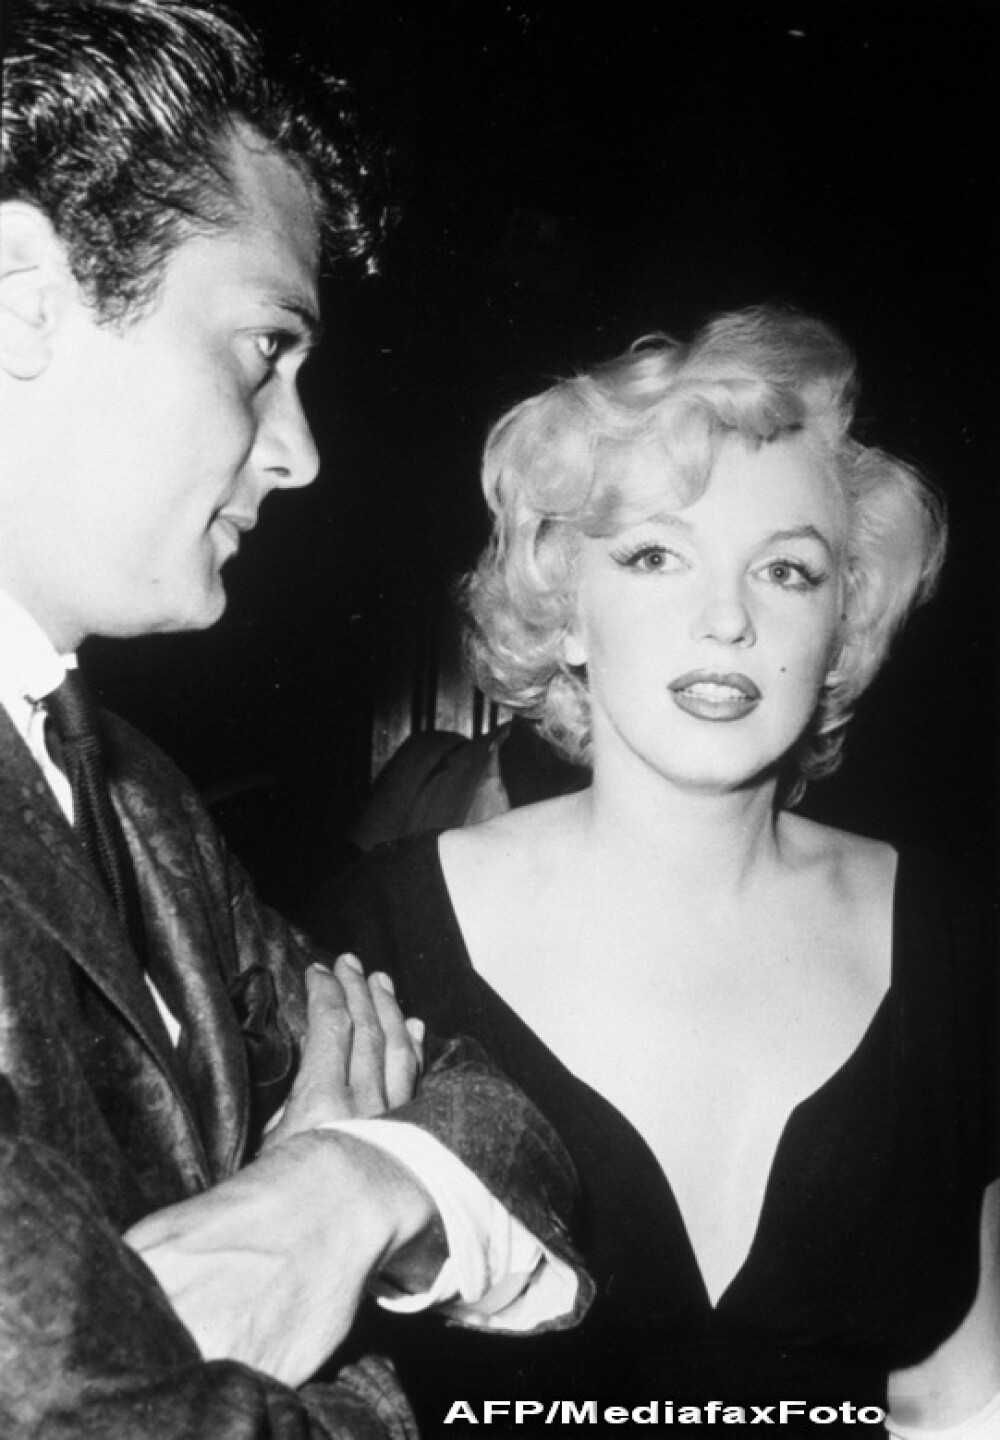 20 lucruri pe care nu le știai despre Marilyn Monroe. Au trecut 61 de ani de la moartea sa | FOTO - Imaginea 13